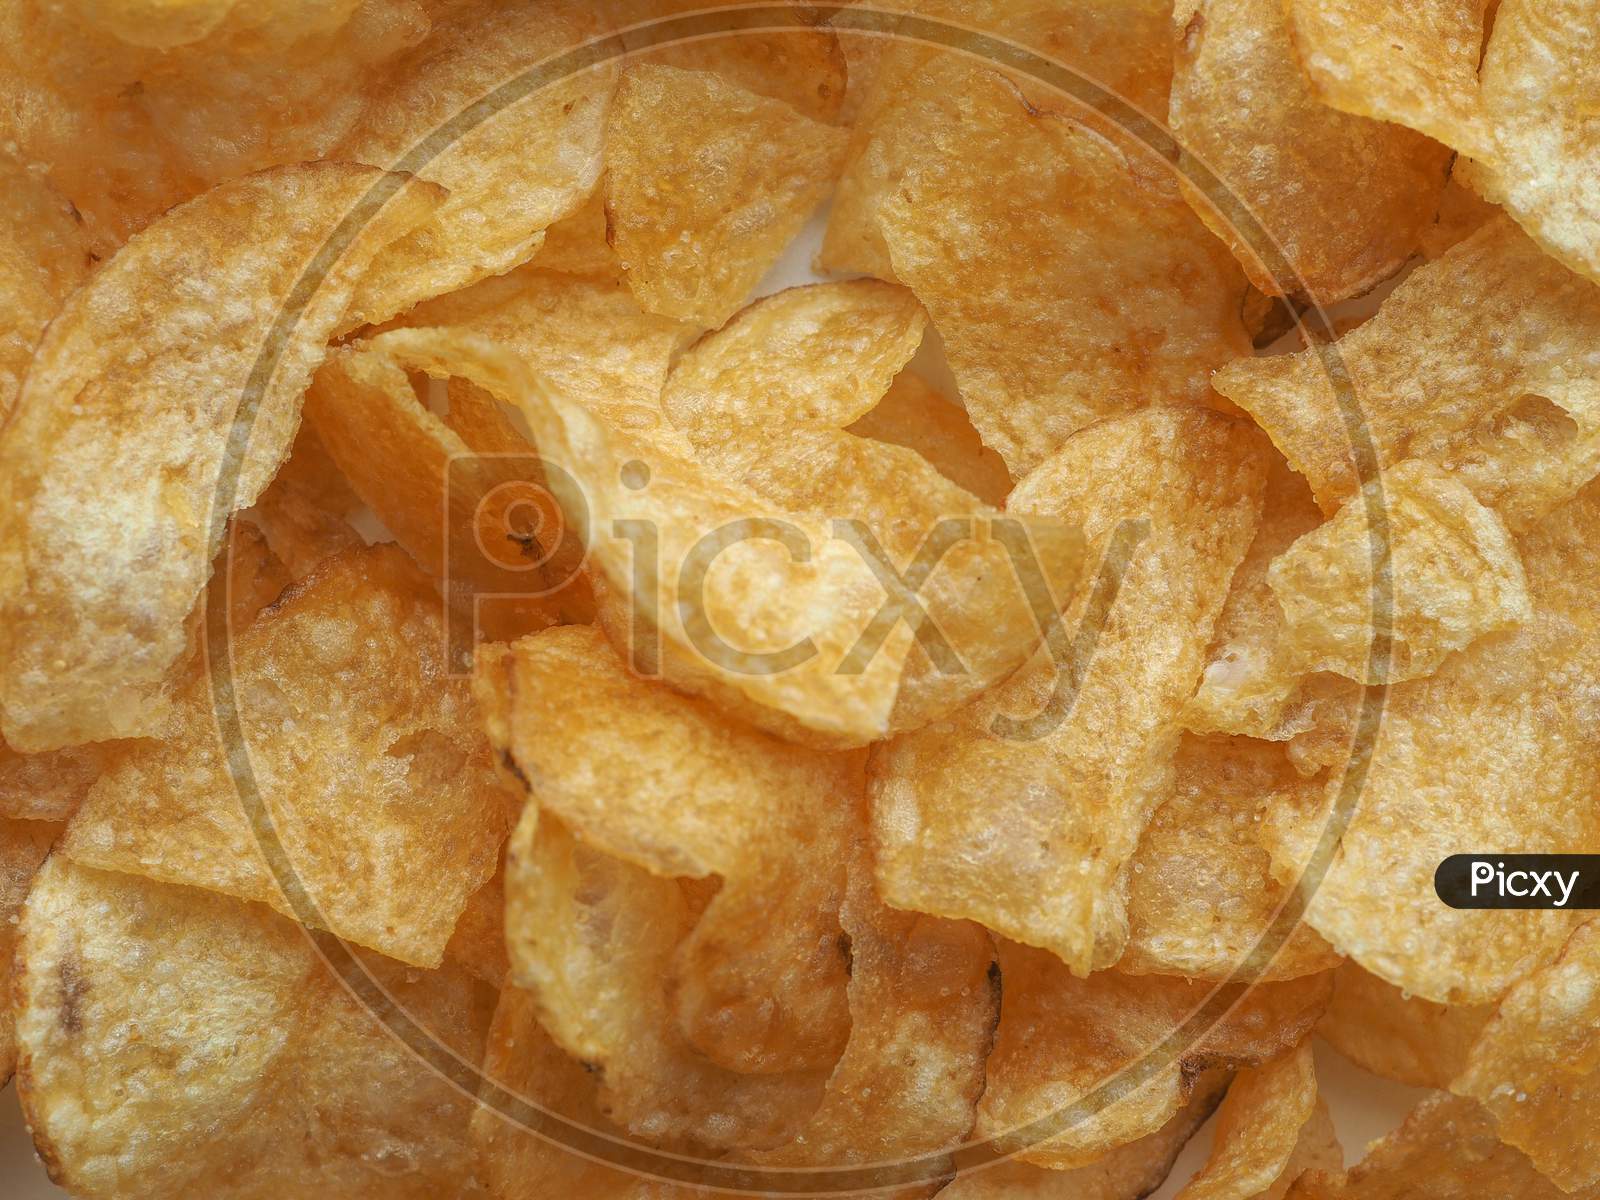 Potato Chips Crisps